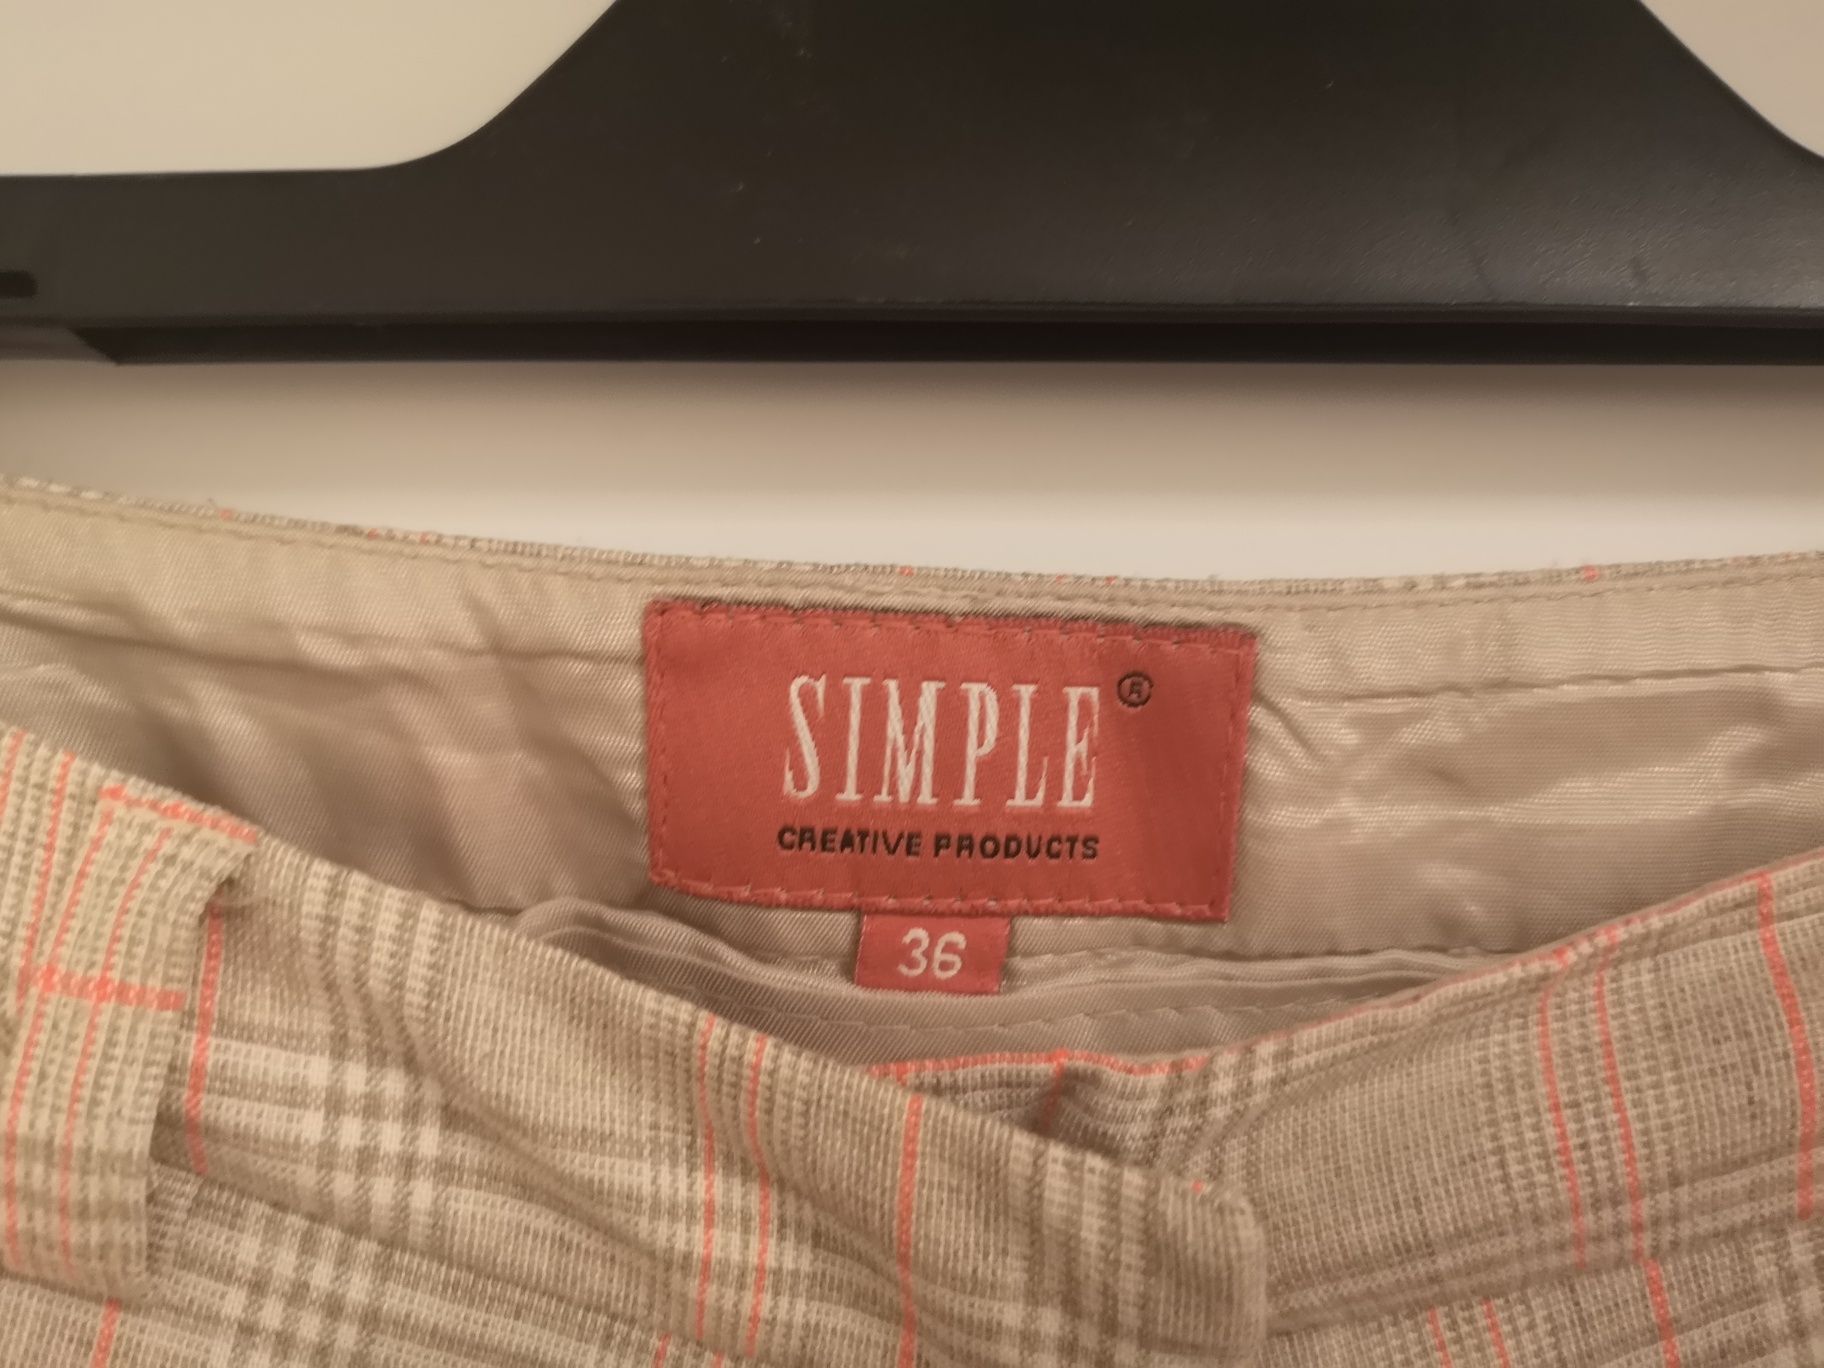 Spodnie w kratkę, beżowe, Simple rozmiar S/36